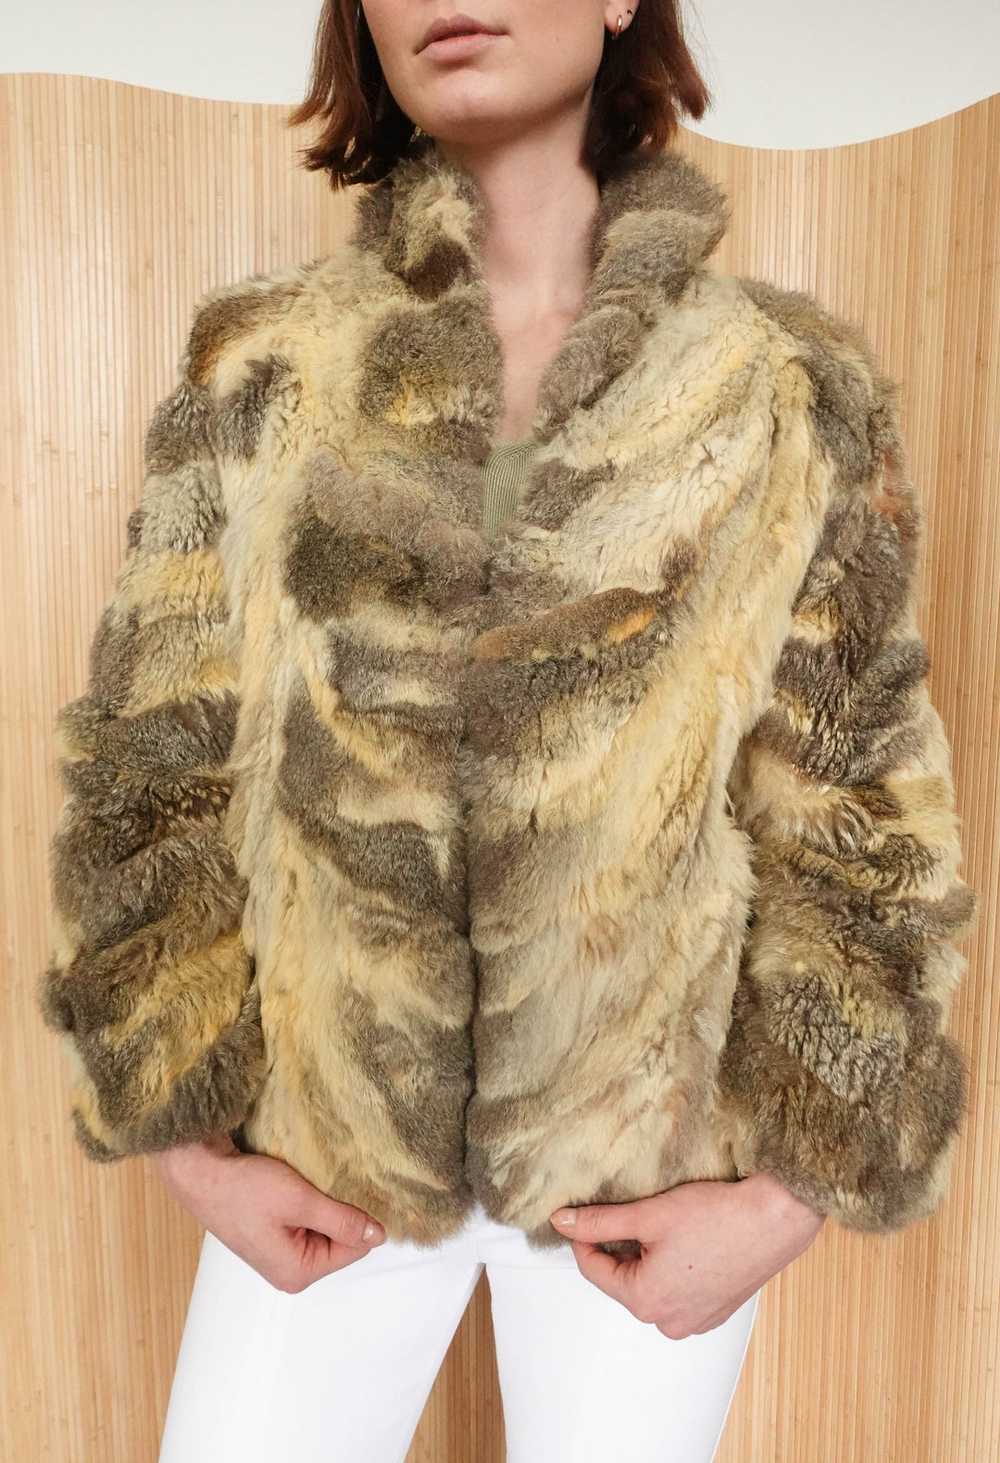 Vintage Cropped Fur Coat - image 3